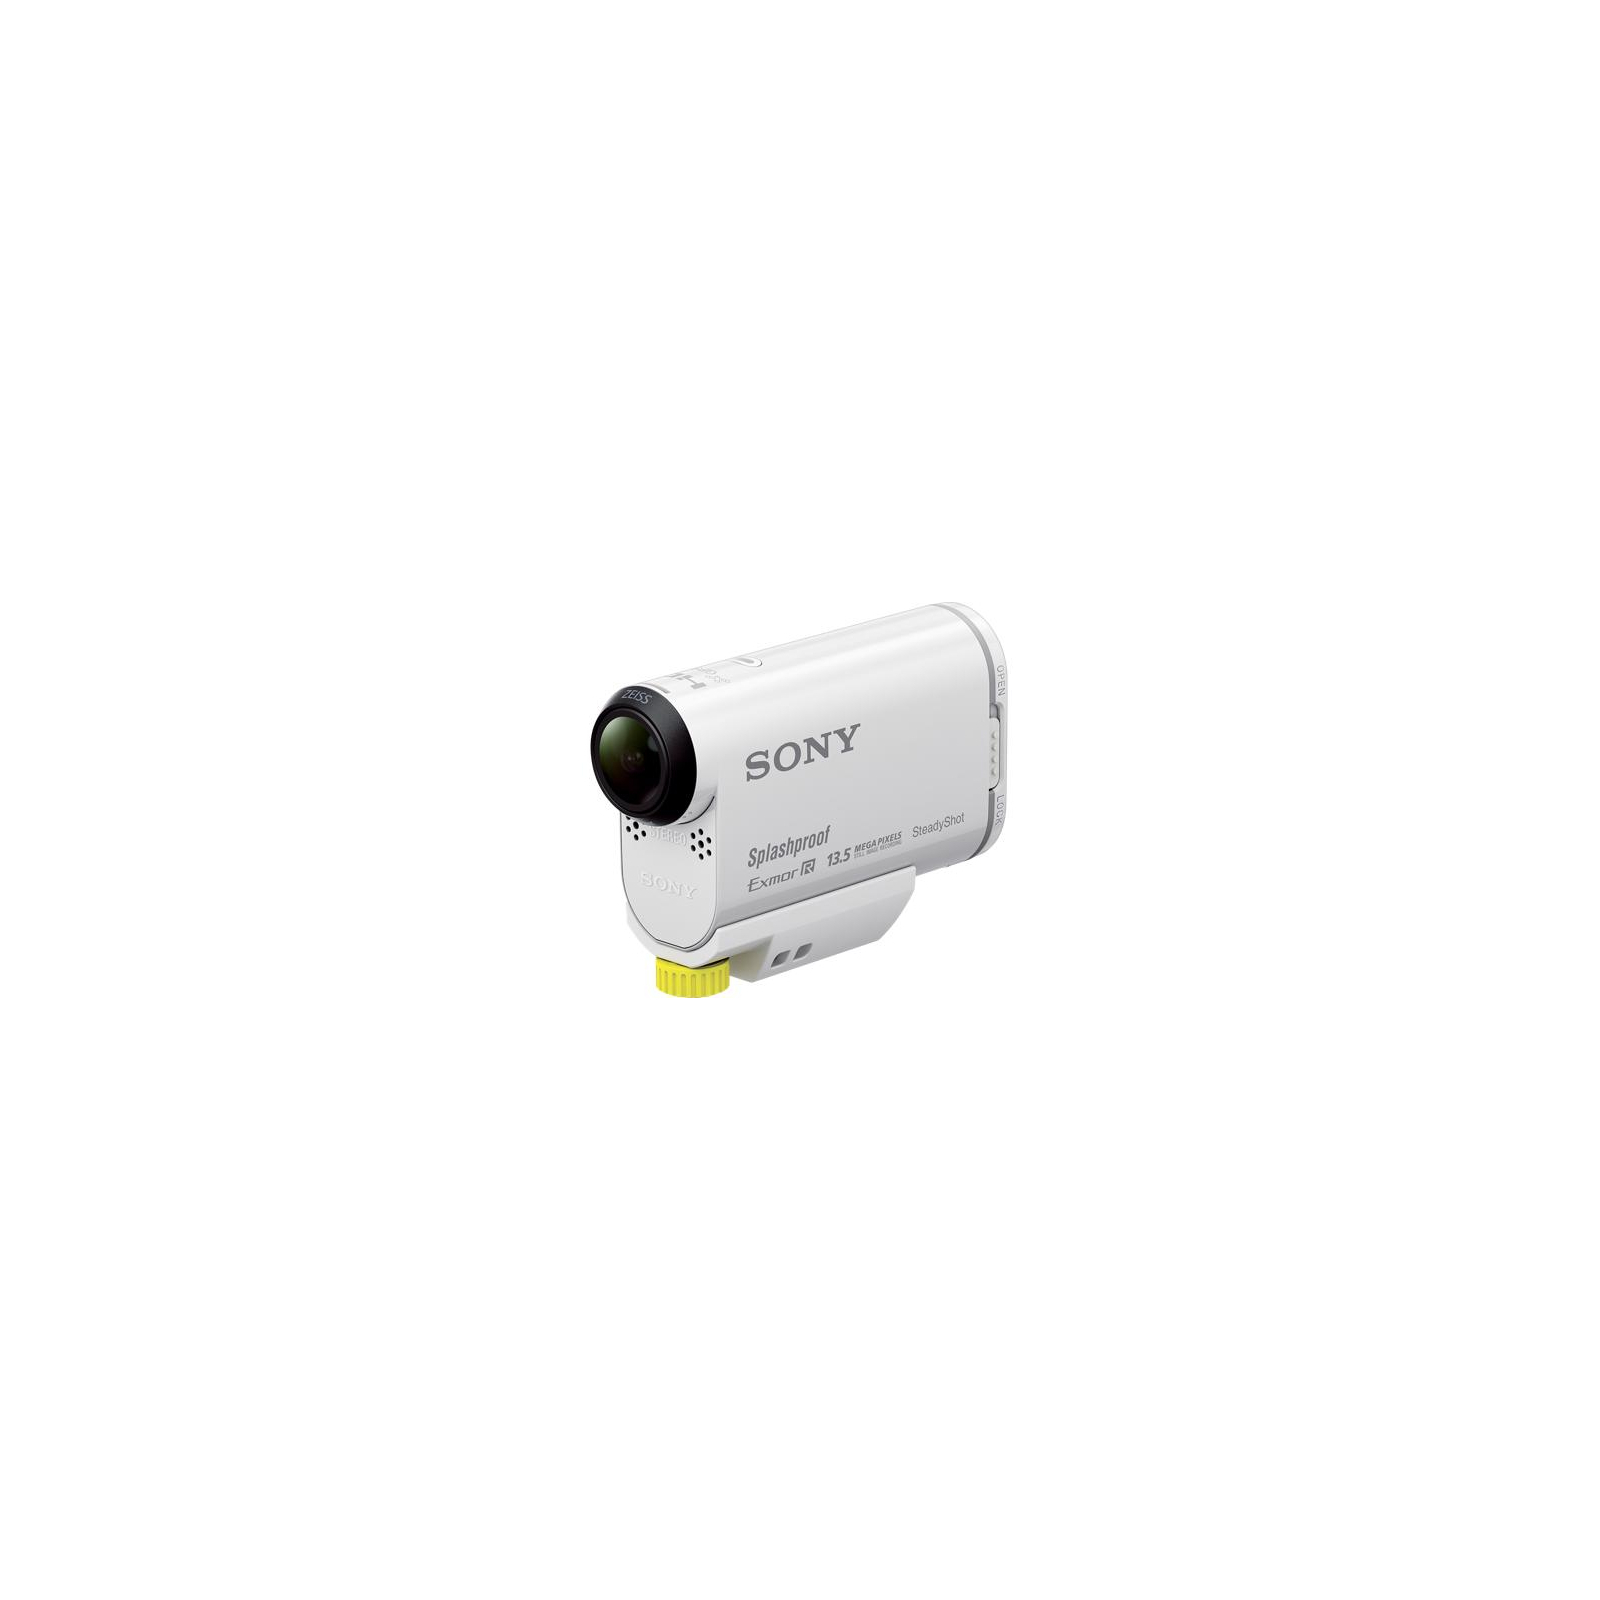 Екшн-камера Sony HDR-AS100V w/mount kit (HDRAS100VW.CEN) зображення 2